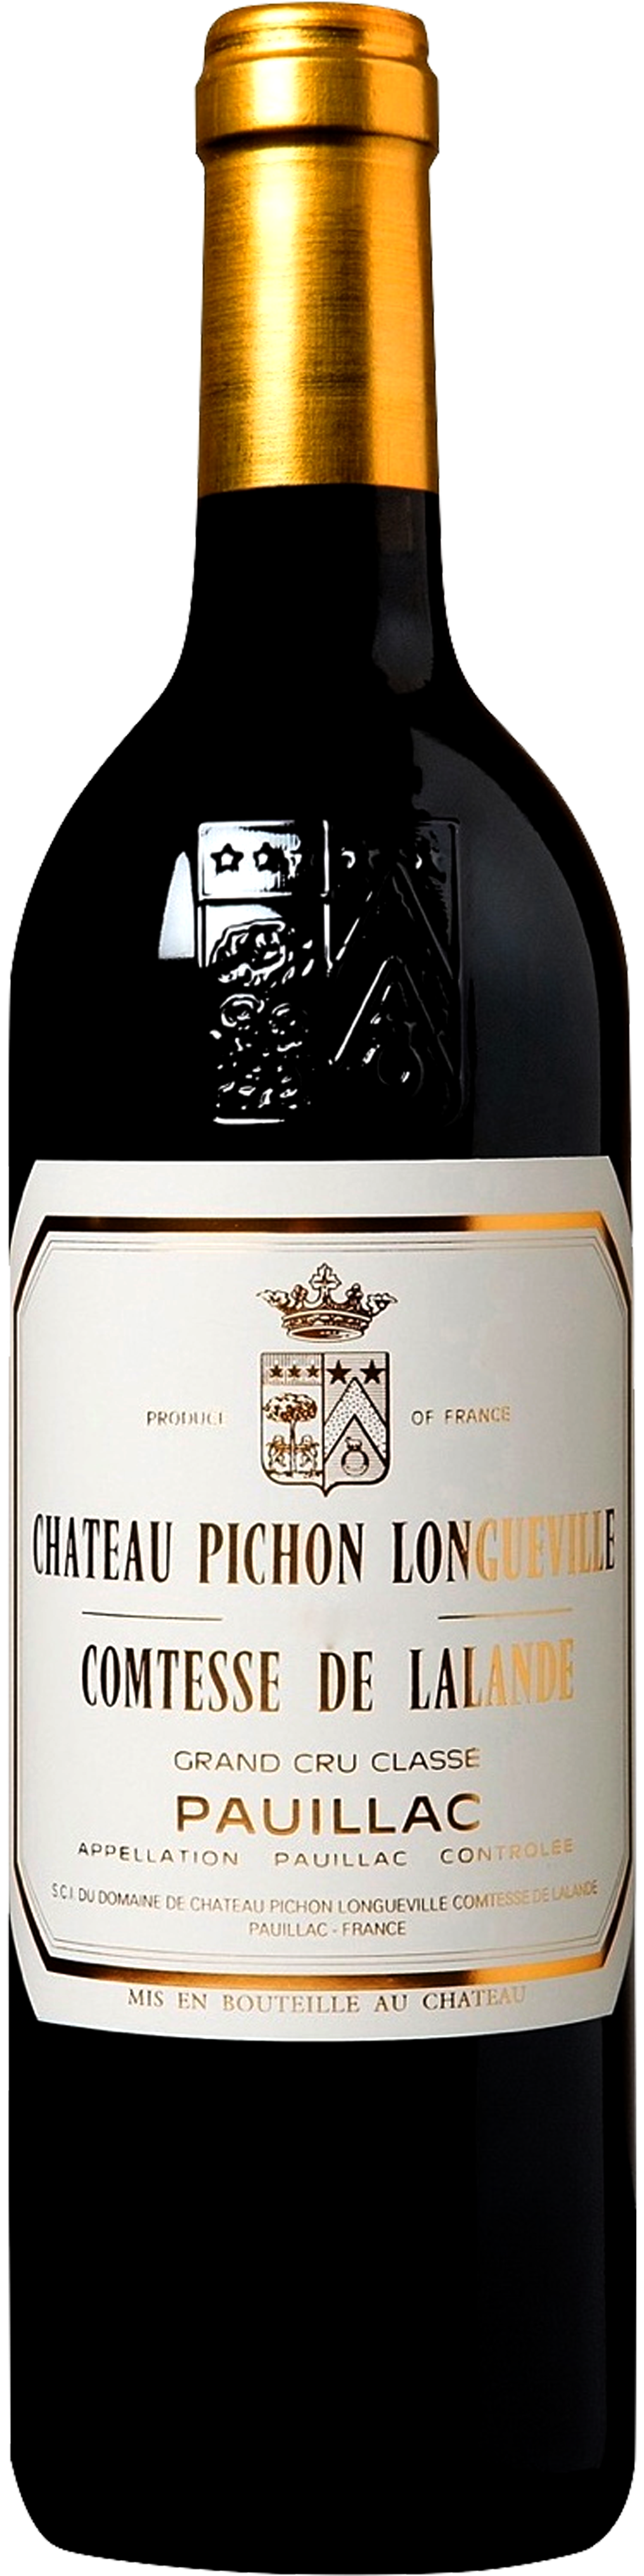 Bottle shot of 2006 Pichon Longueville Lalande, 2ème Cru Pauillac